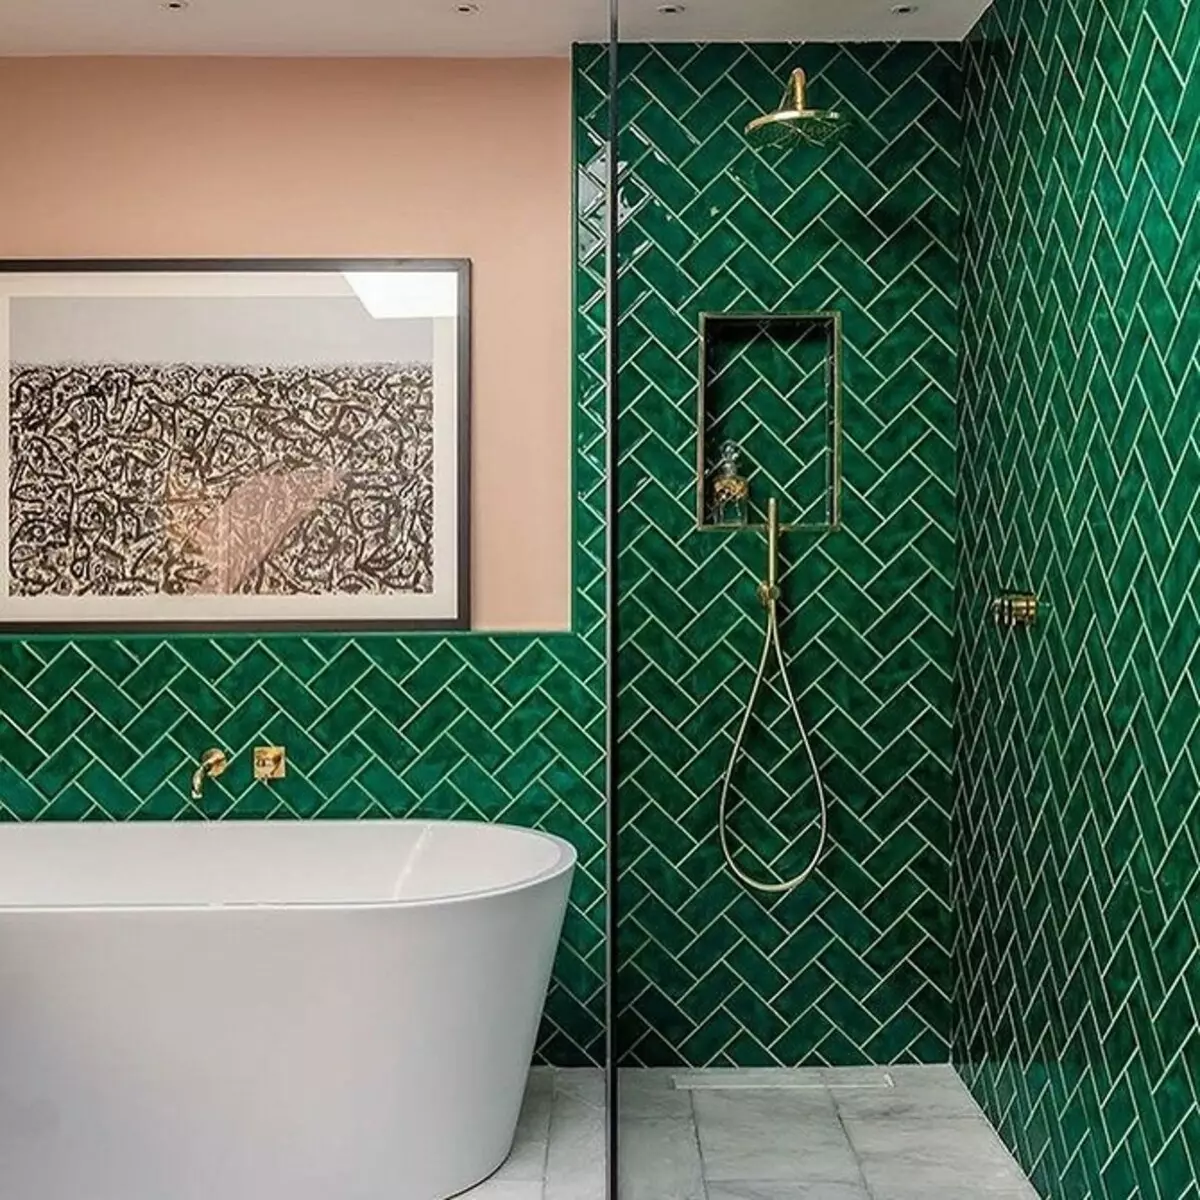 Duş ve Bath ile Banyo Tasarımı: 75 Fotoğraflar - IVD.RU 4108_58